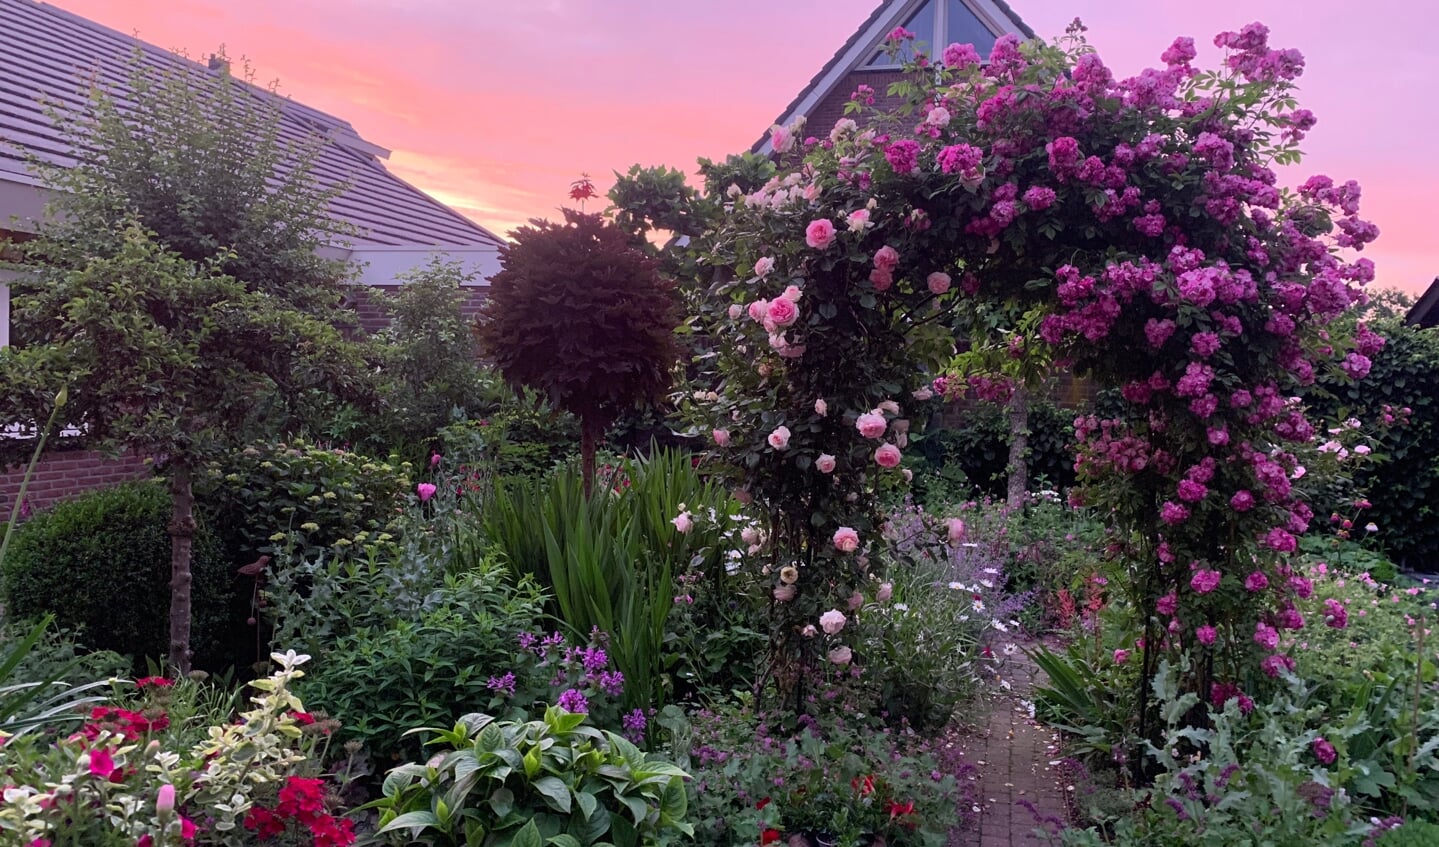 ,,Onze achtertuin aan de Bekestere bij zonsondergang.'' Ingezonden door Kees Roest.